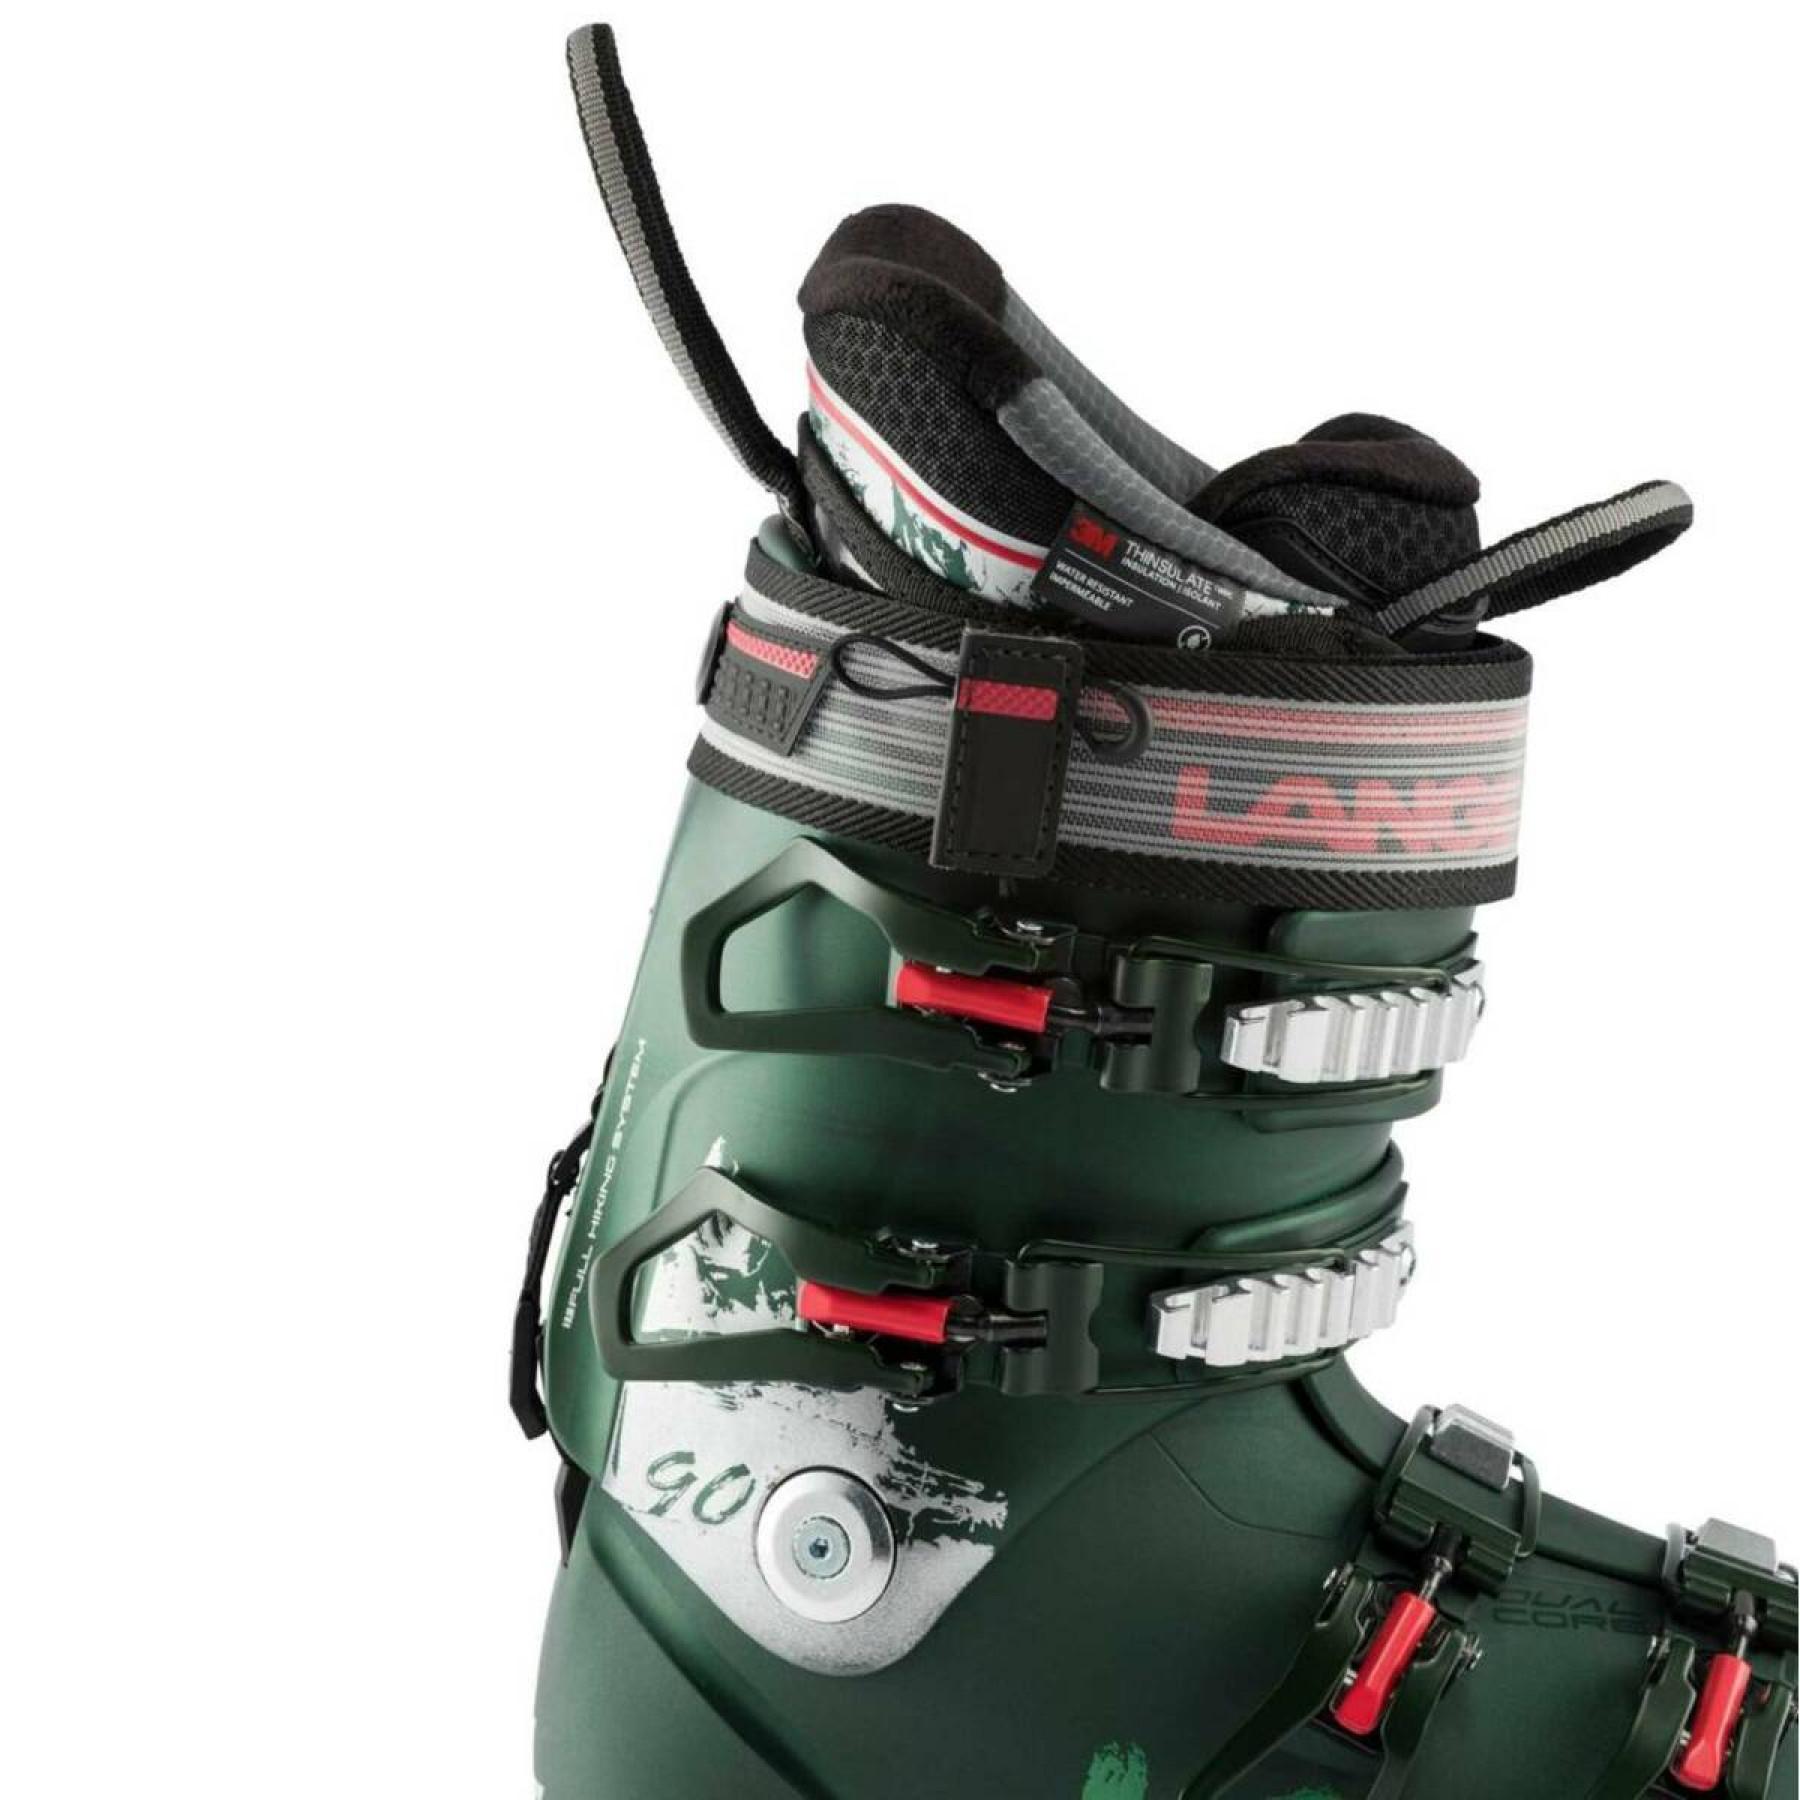 Women's ski boots Lange xt3 90 gw